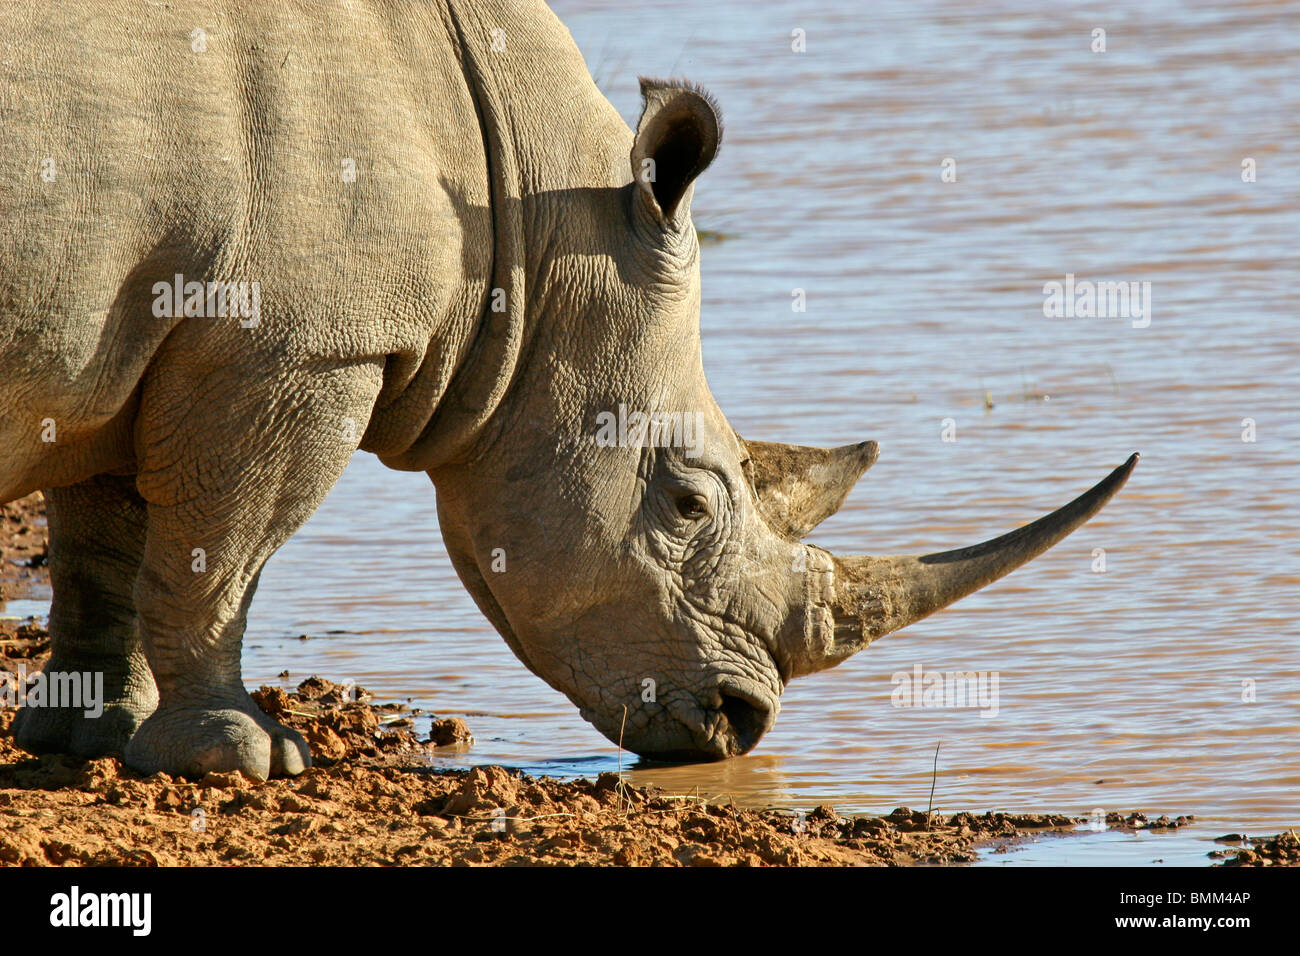 África, África del Sur, Kwandwe. El rinoceronte blanco. Foto de stock